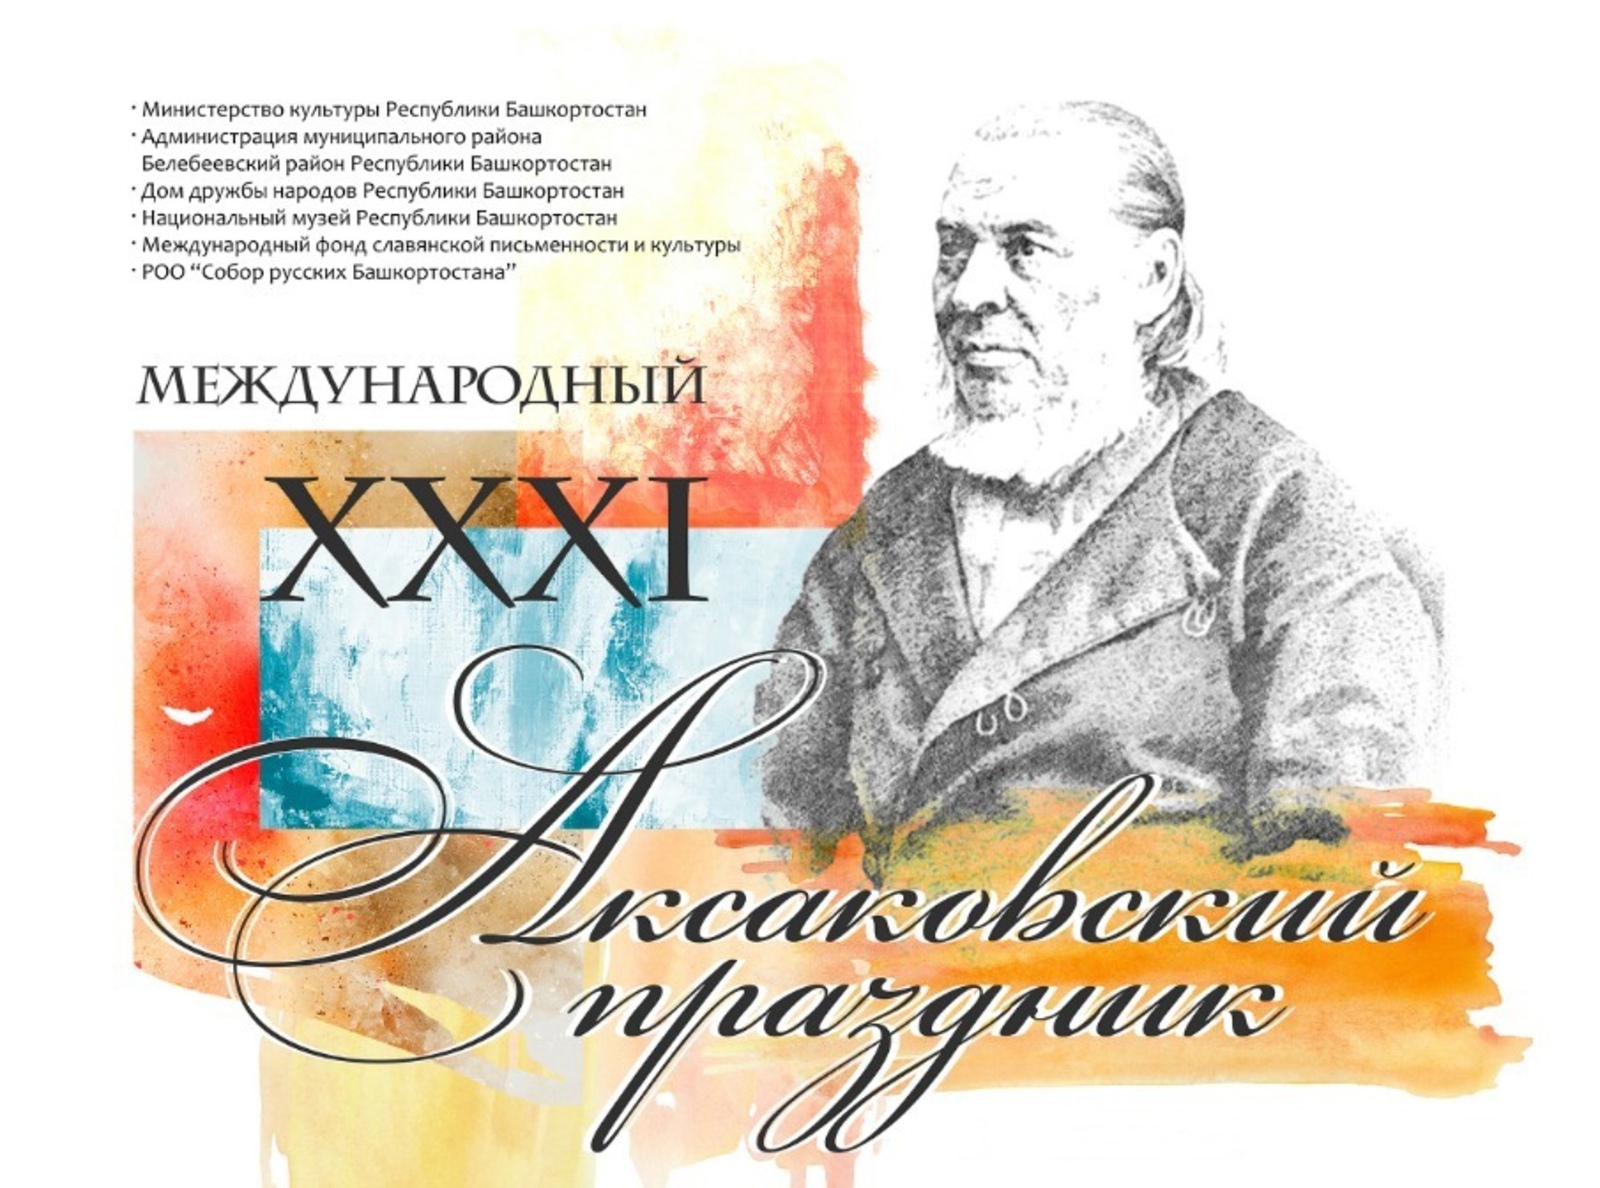 «Аксаковские музеи» Башкортостана приглашают на Международный Аксаковский праздник